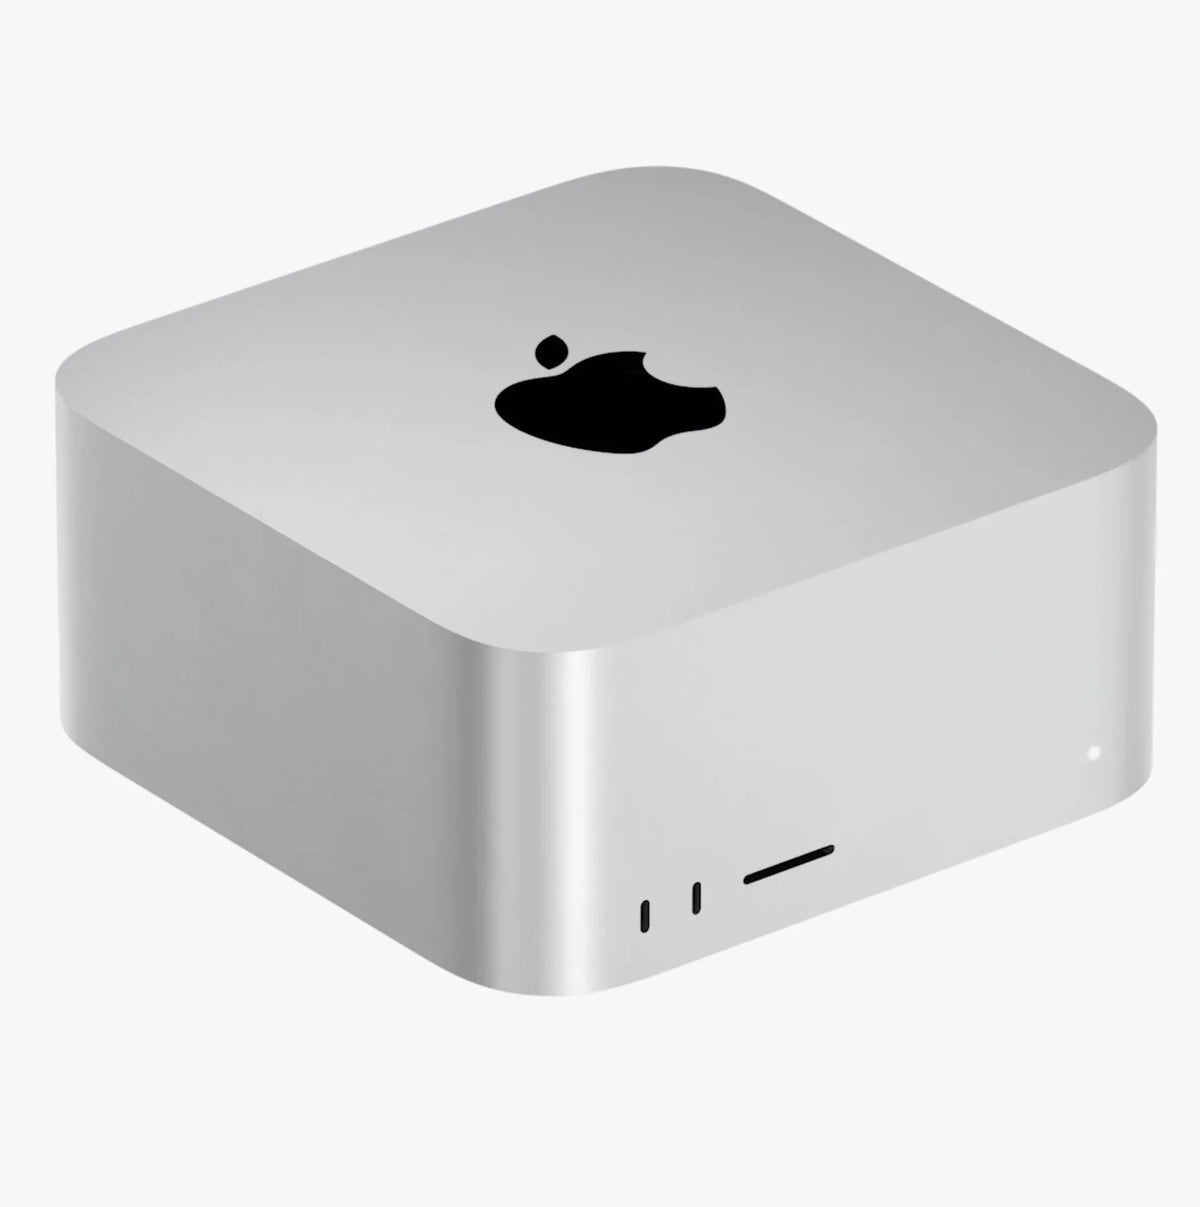 Apple Mac Studio M2 Ultra chip with 24‑core CPU, 60‑core GPU, 1TB SSD